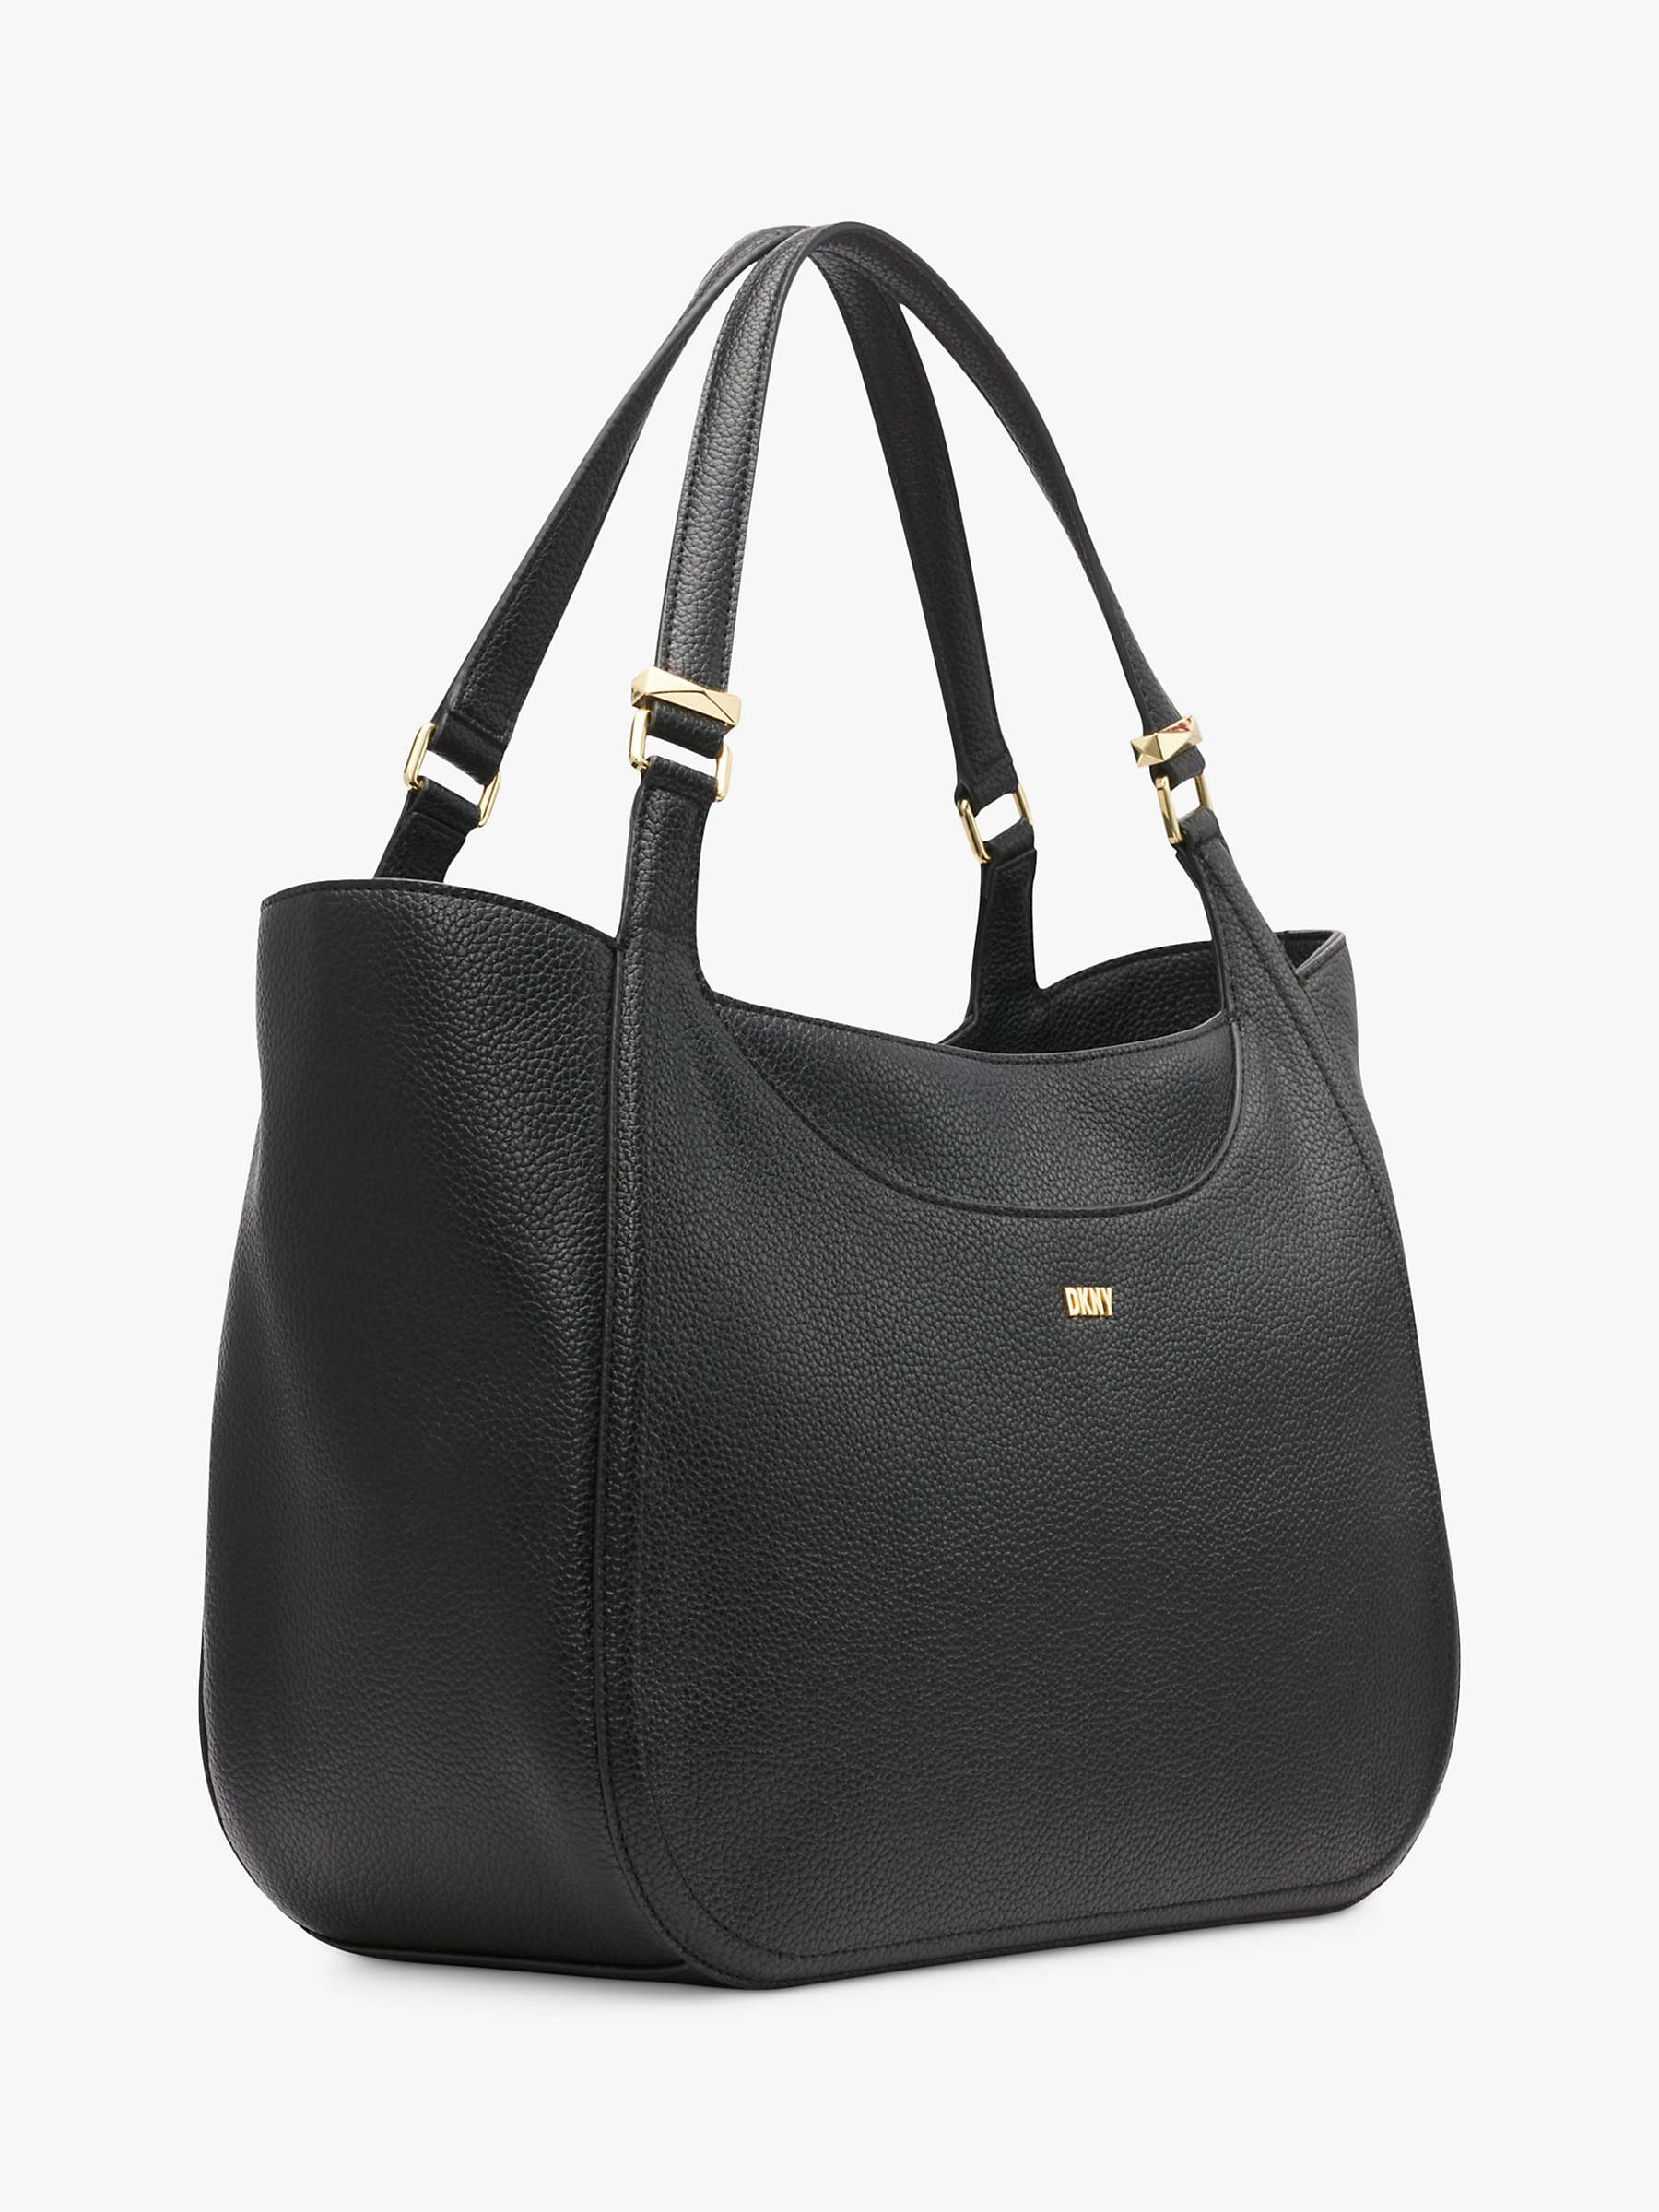 Buy DKNY Barbara Shopper Bag, Black/Gold Online at johnlewis.com